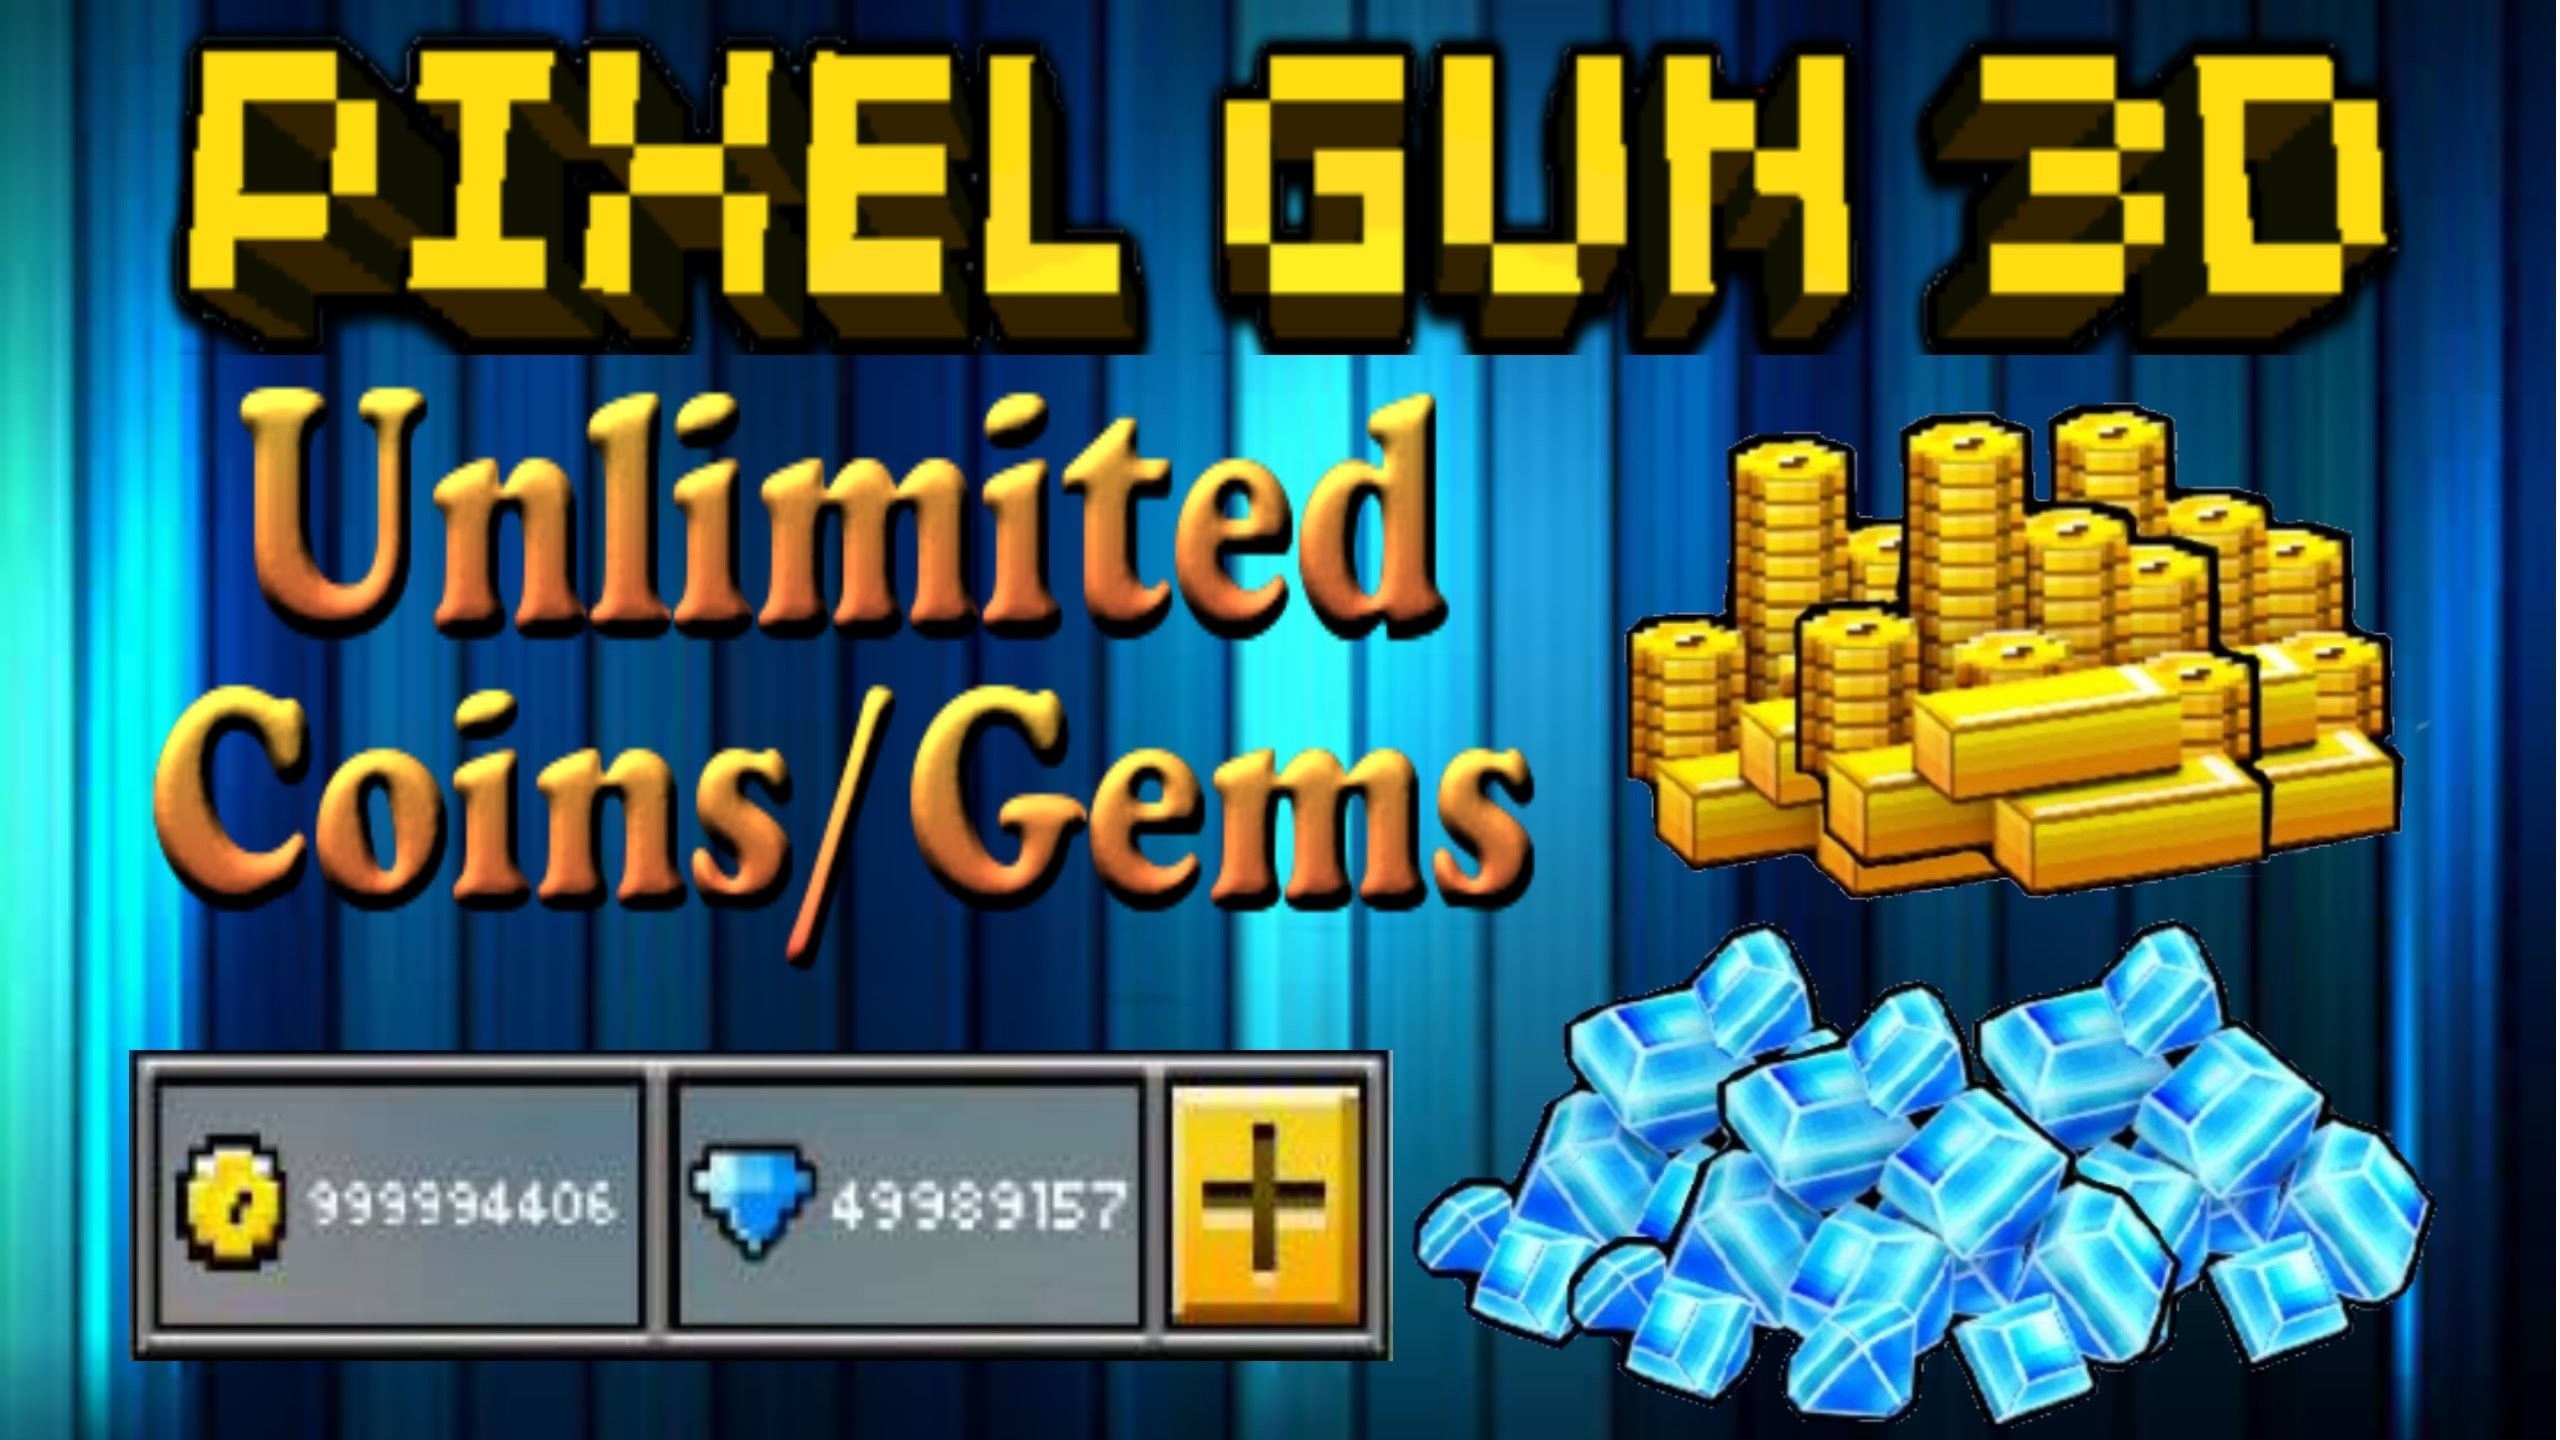 2560x1440 PIXEL GUN 3D HACK FREE